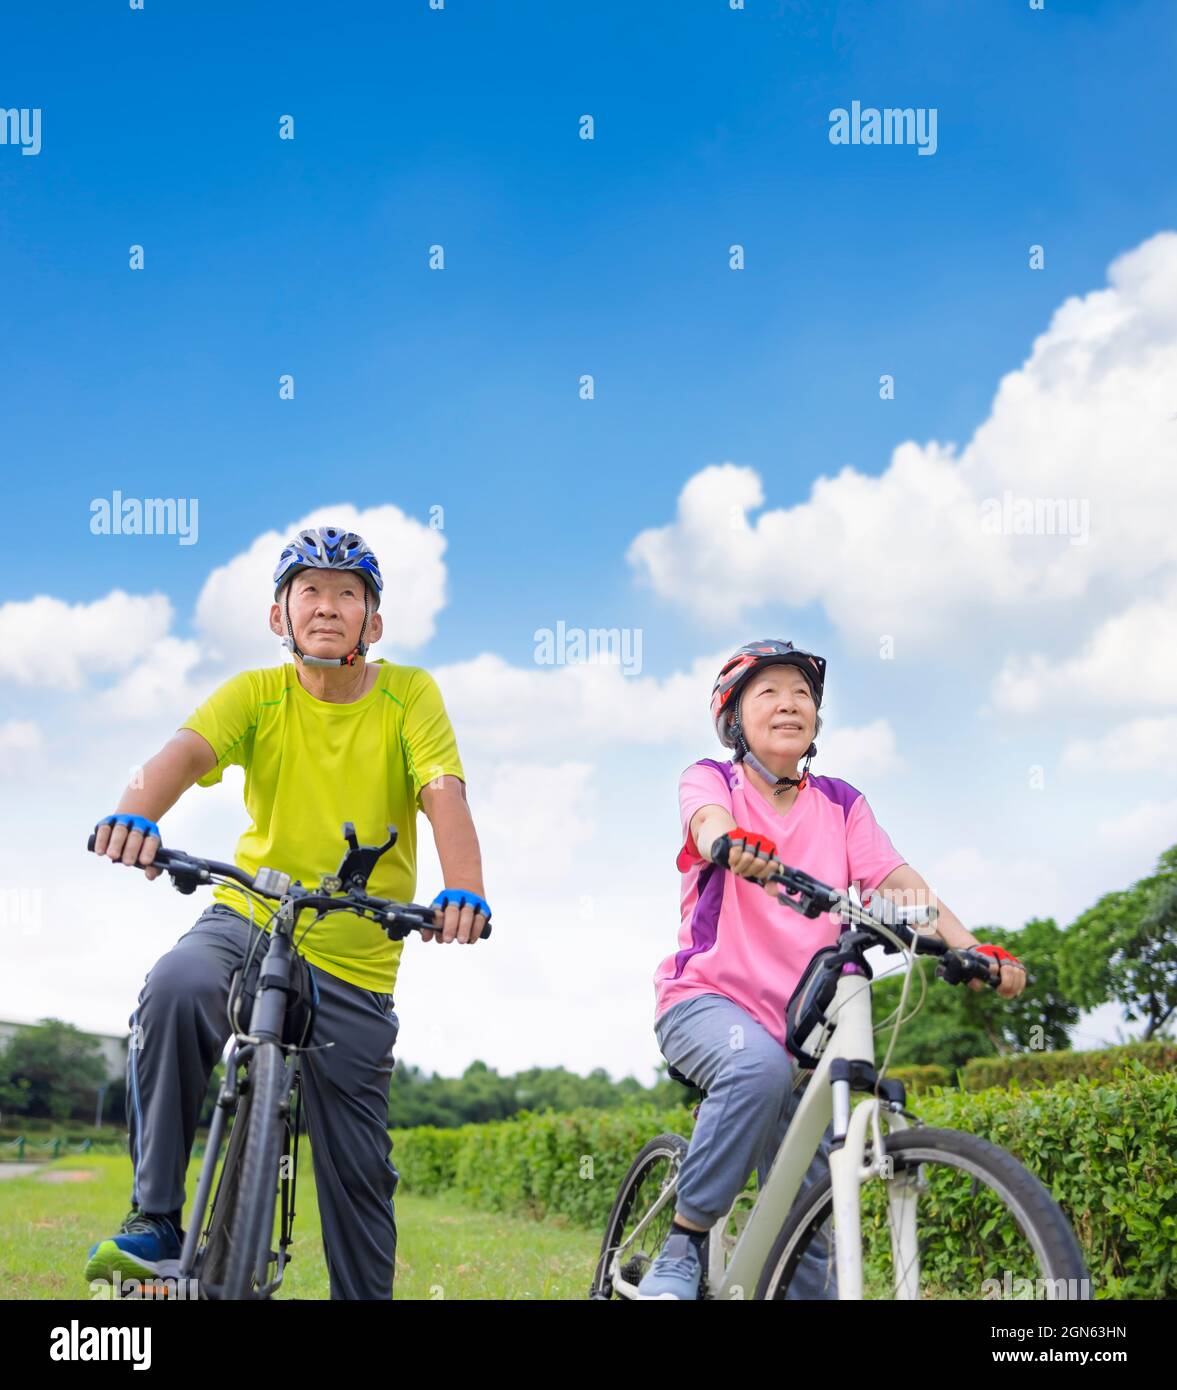 Asiatique en bonne santé, couple senior s'exerçant avec des vélos Banque D'Images